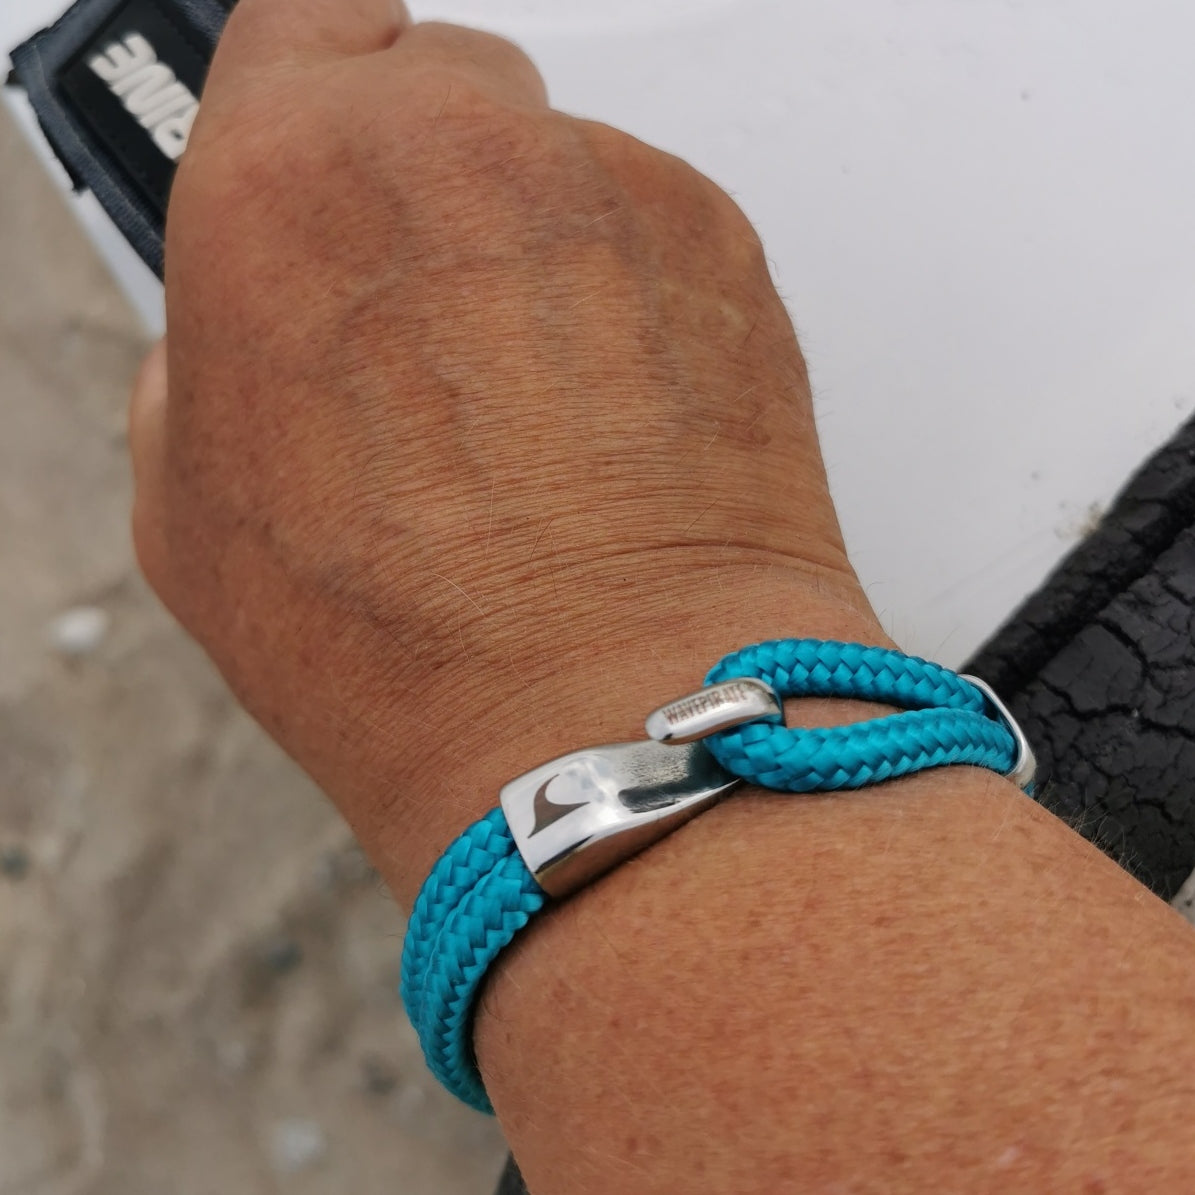 Herren-Segeltau-Armband-Peak-blau-geflochten-Edelstahlverschluss-getragen-wavepirate-shop-st